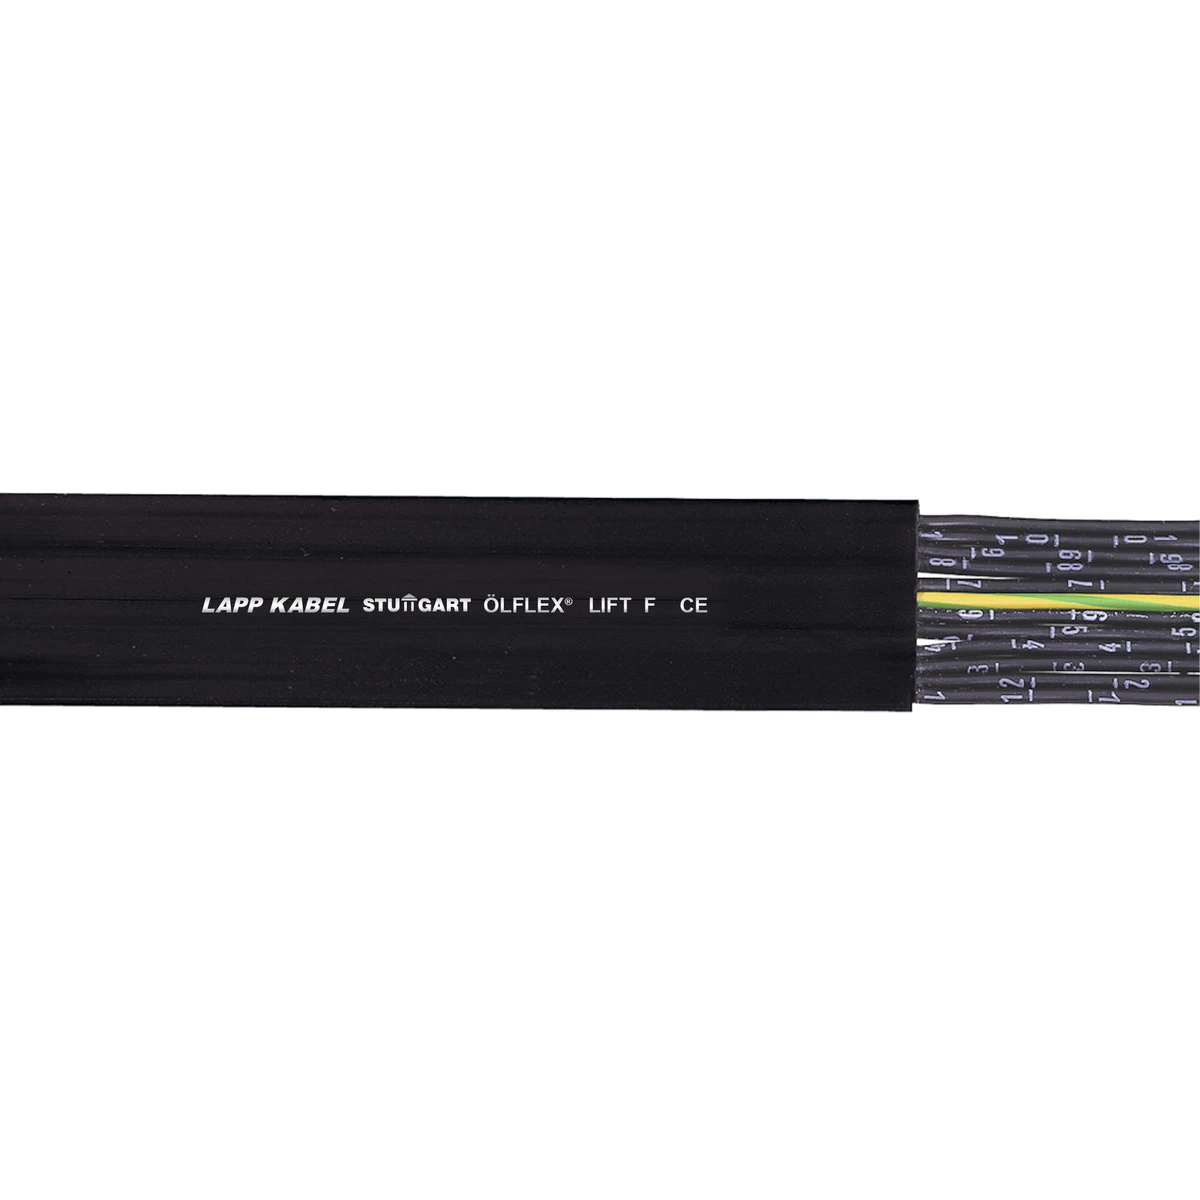 Lapp Voedingskabel < 1 kV, voor beweegbare toepassingen ÖLFLEX LIFT F